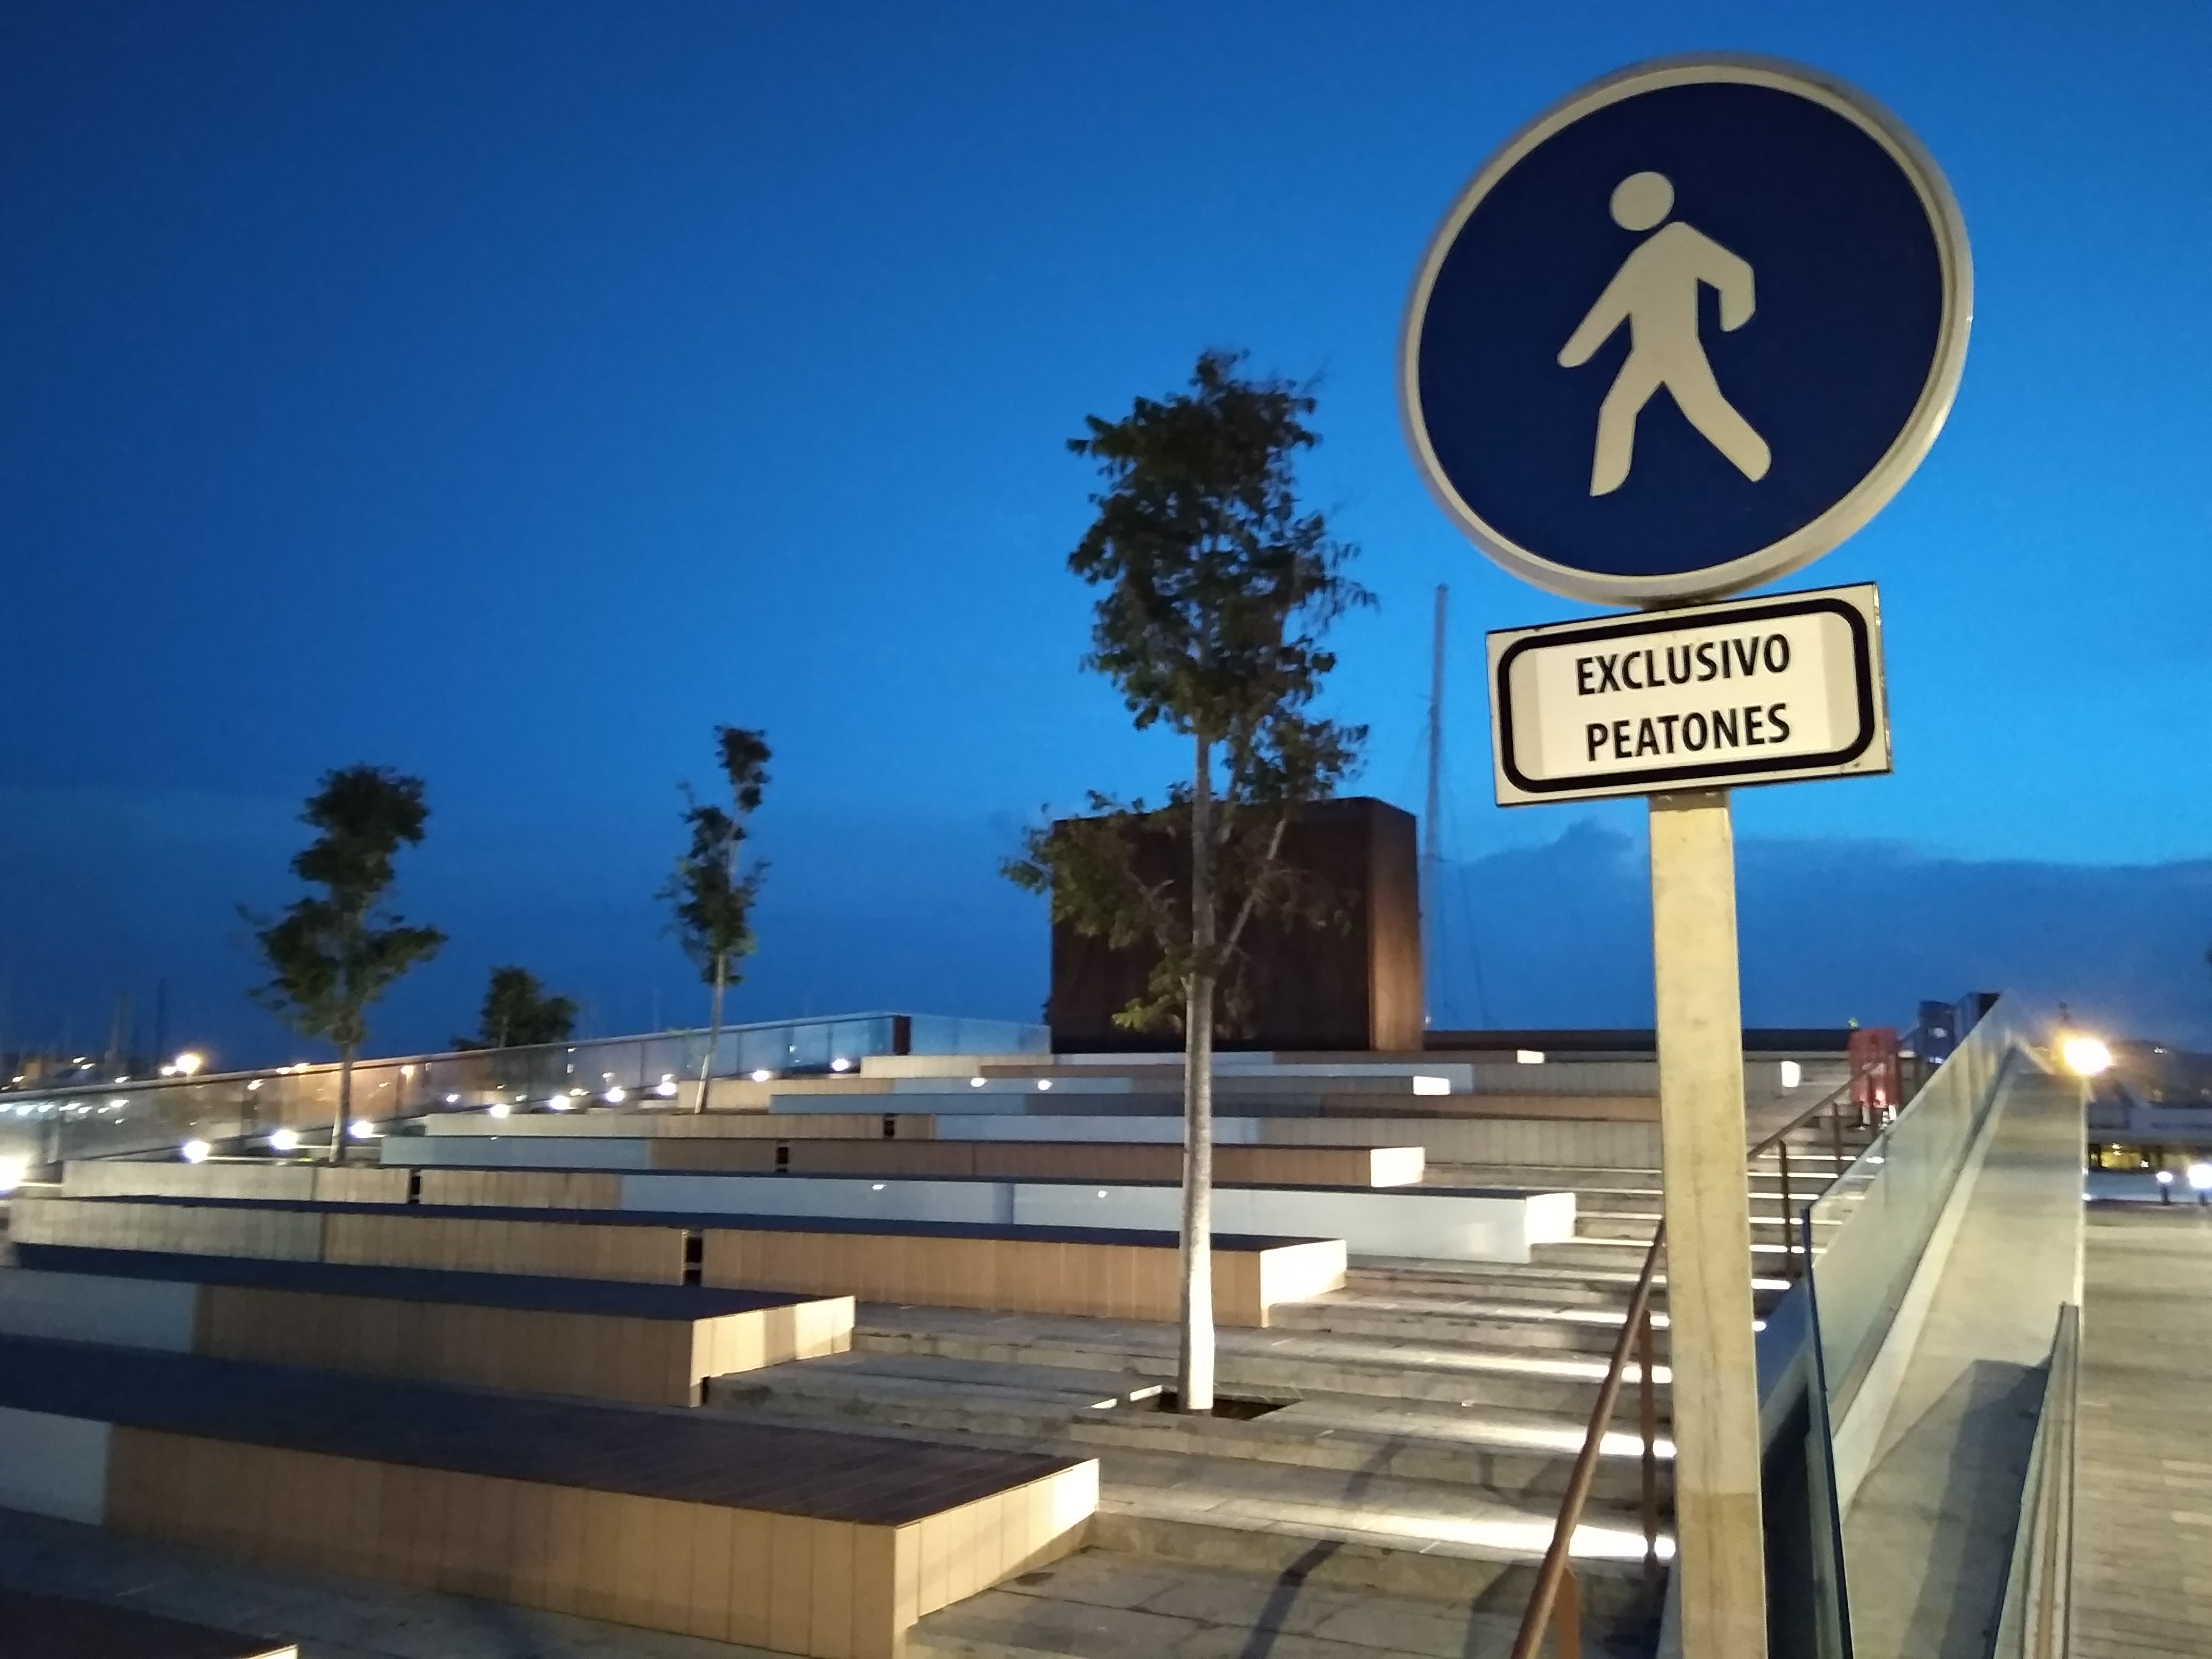 La Plaza des Martell, en el Puerto de Eivissa, para disfrute exclusivo de peatones